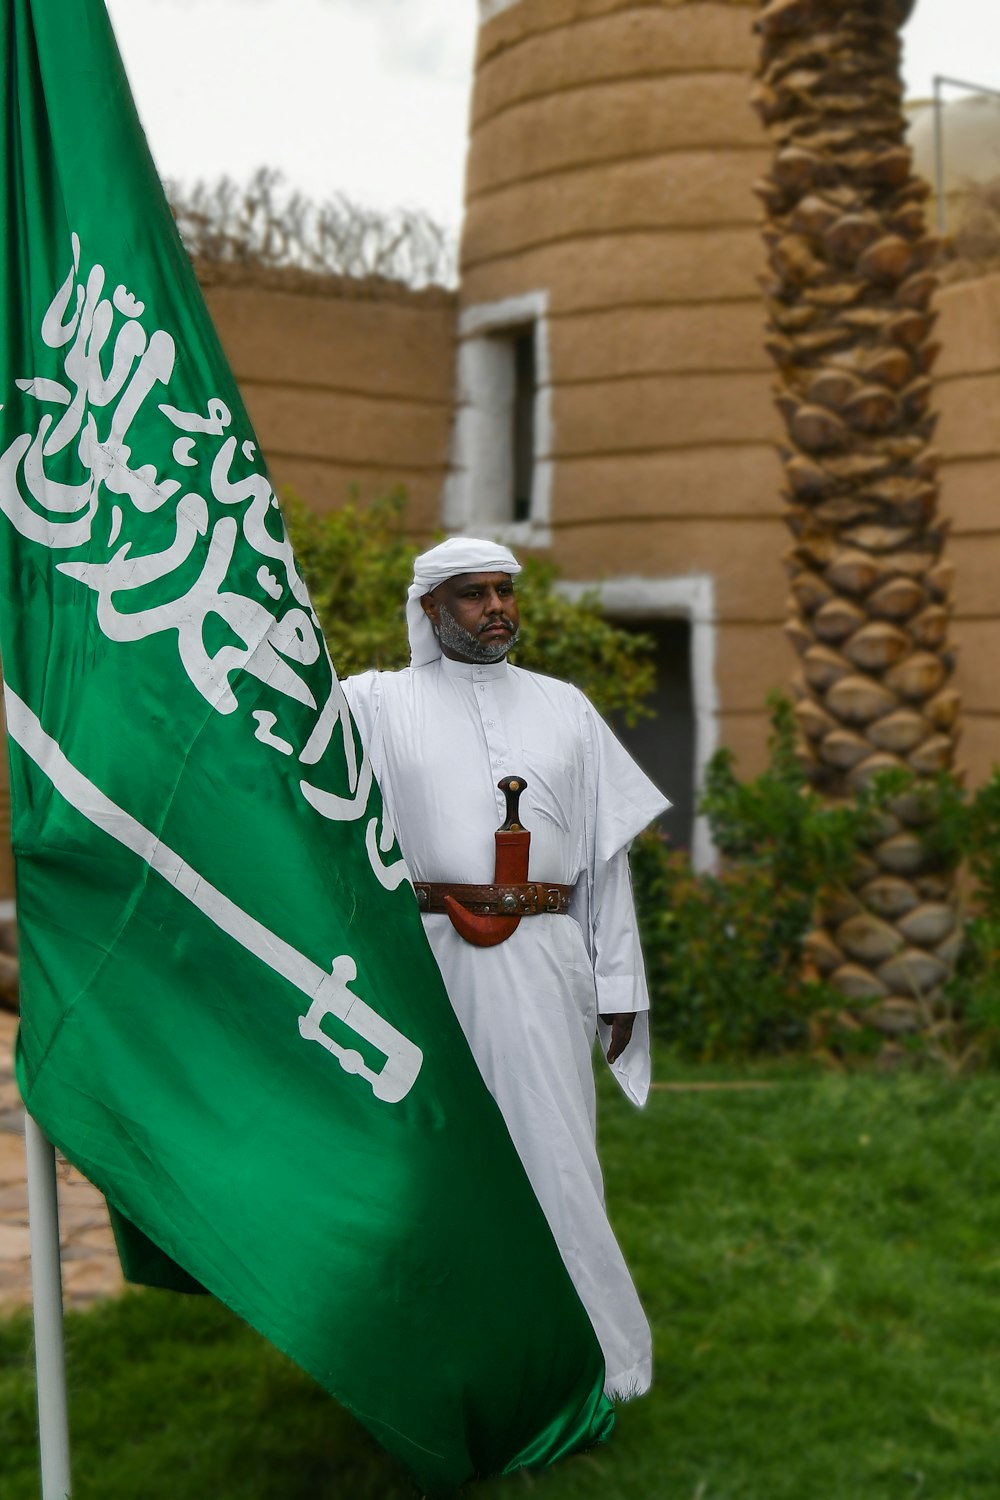 Un hombre parado junto a una bandera verde